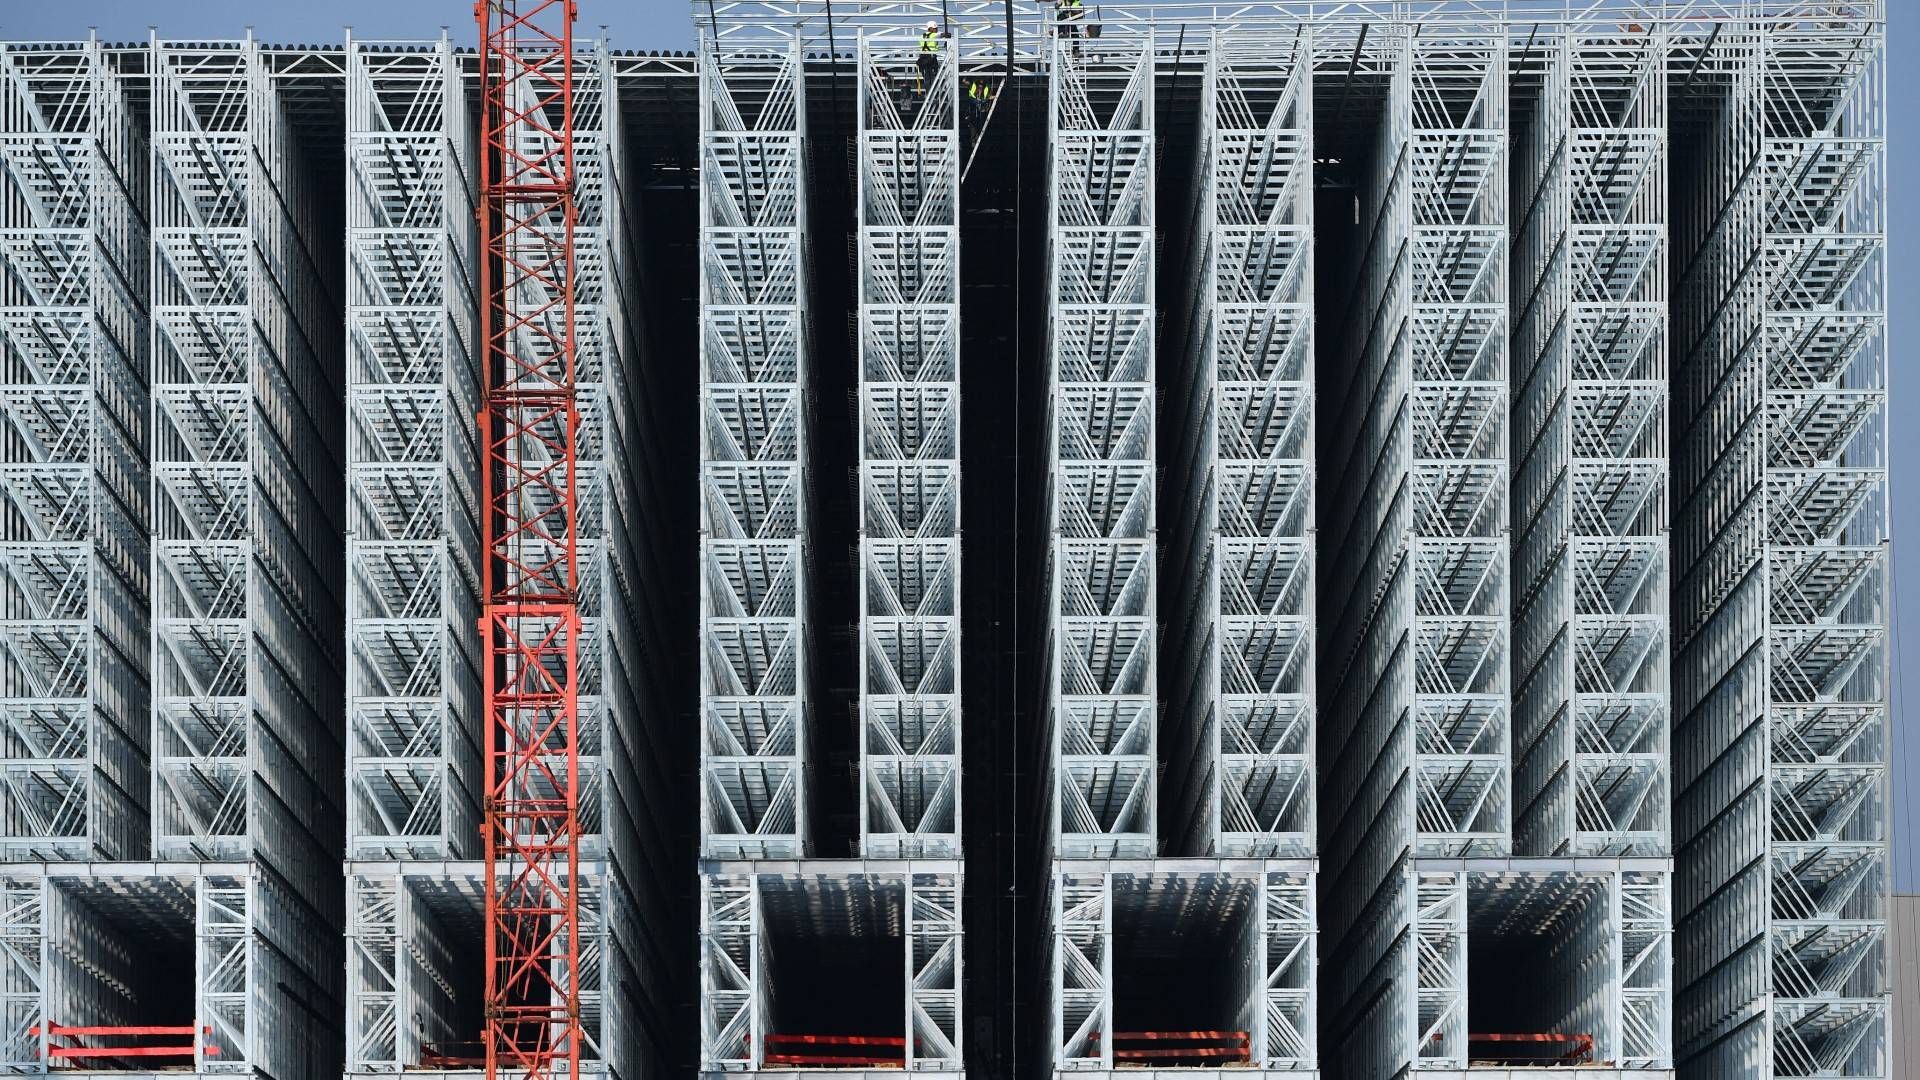 Bauleute errichten die Stahlkonstruktion für ein Warenlager in Arnstadt | Foto: picture alliance/Martin Schutt/dpa-Zentralbild/ZB